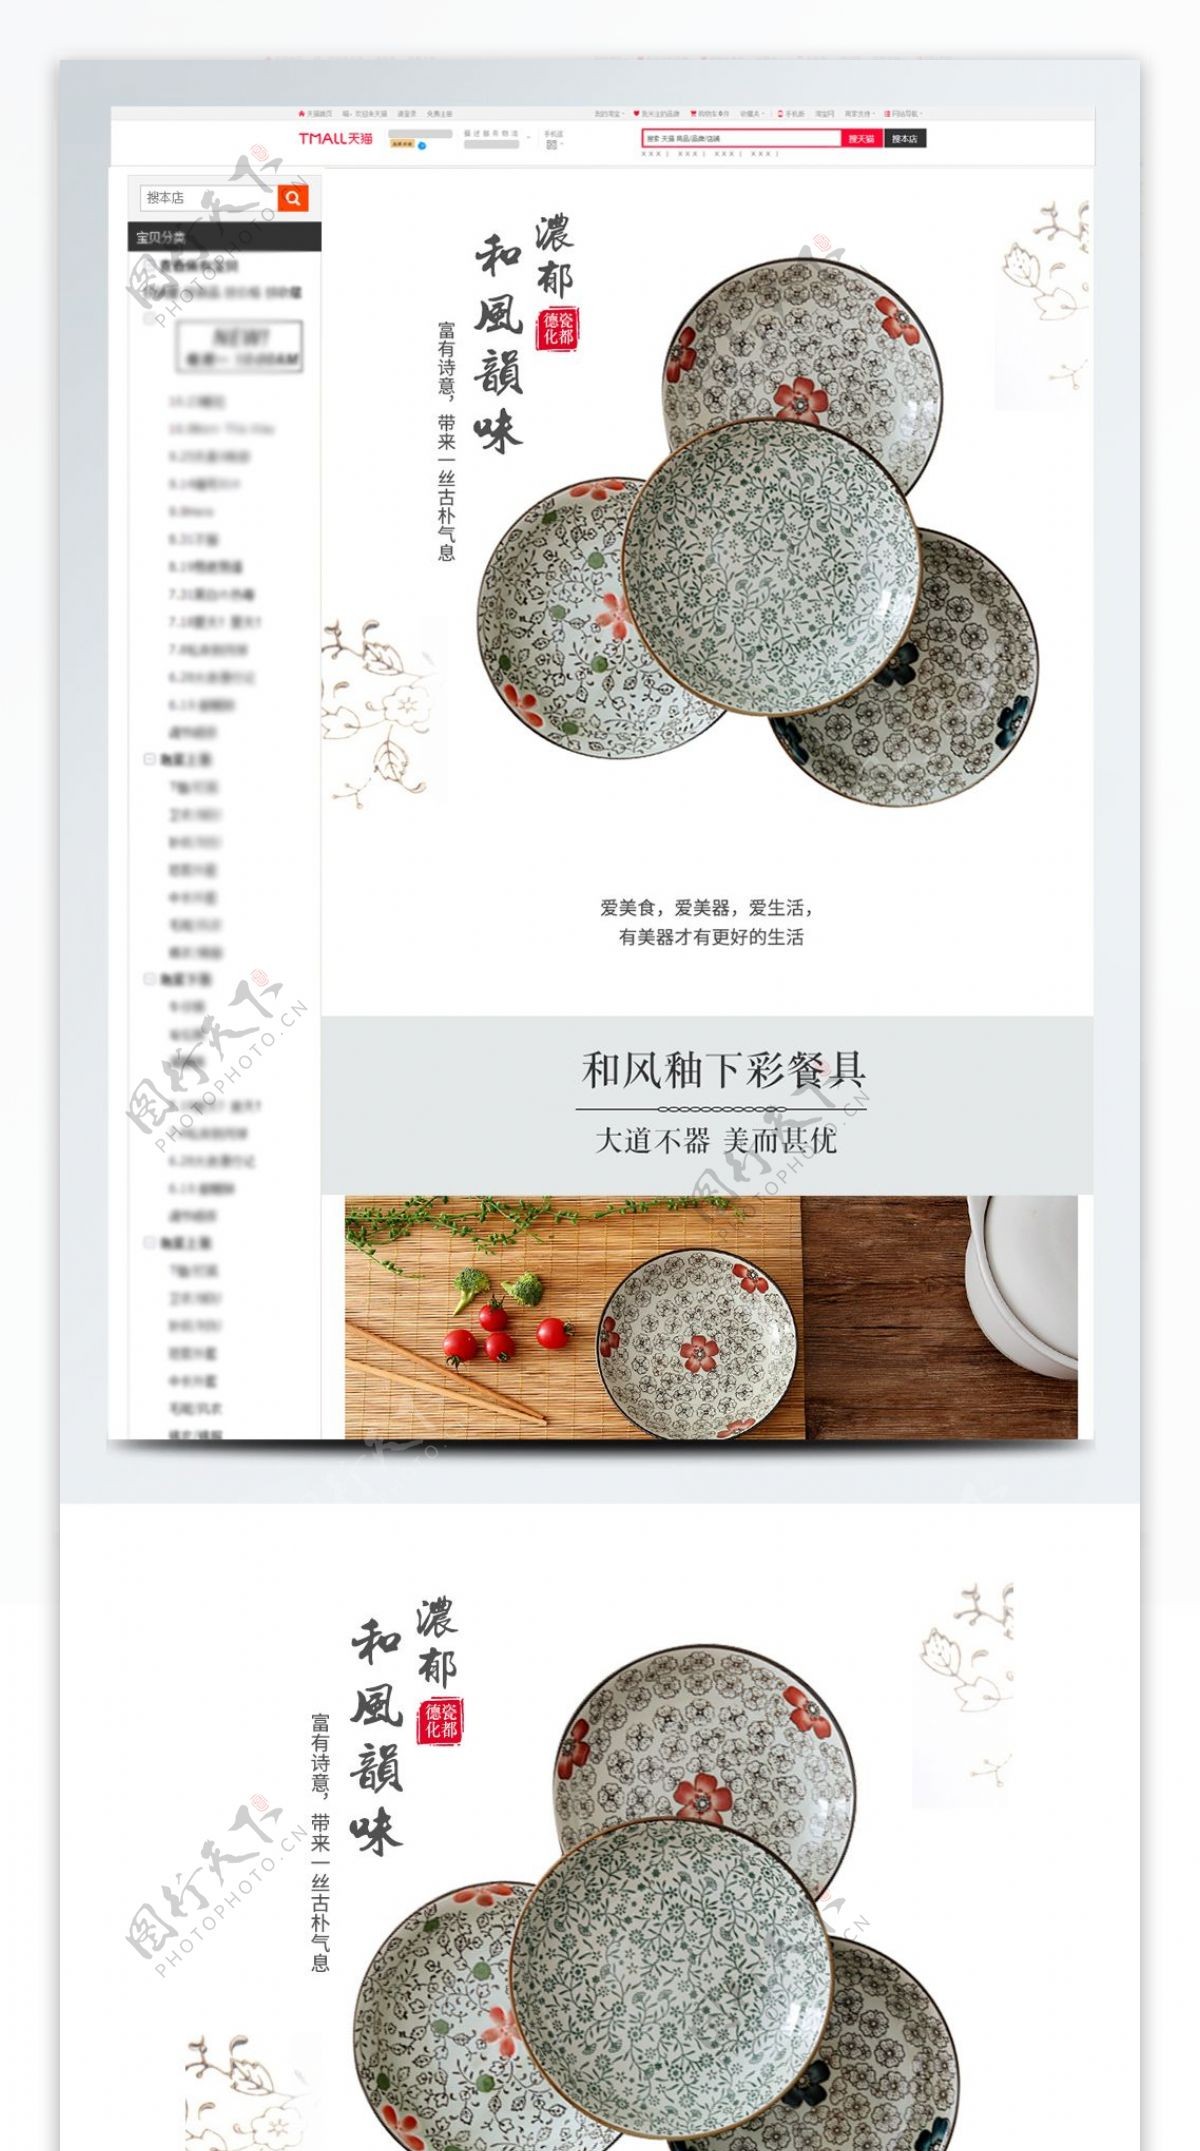 淘宝天猫简约小清新风格日式餐具详情页模板